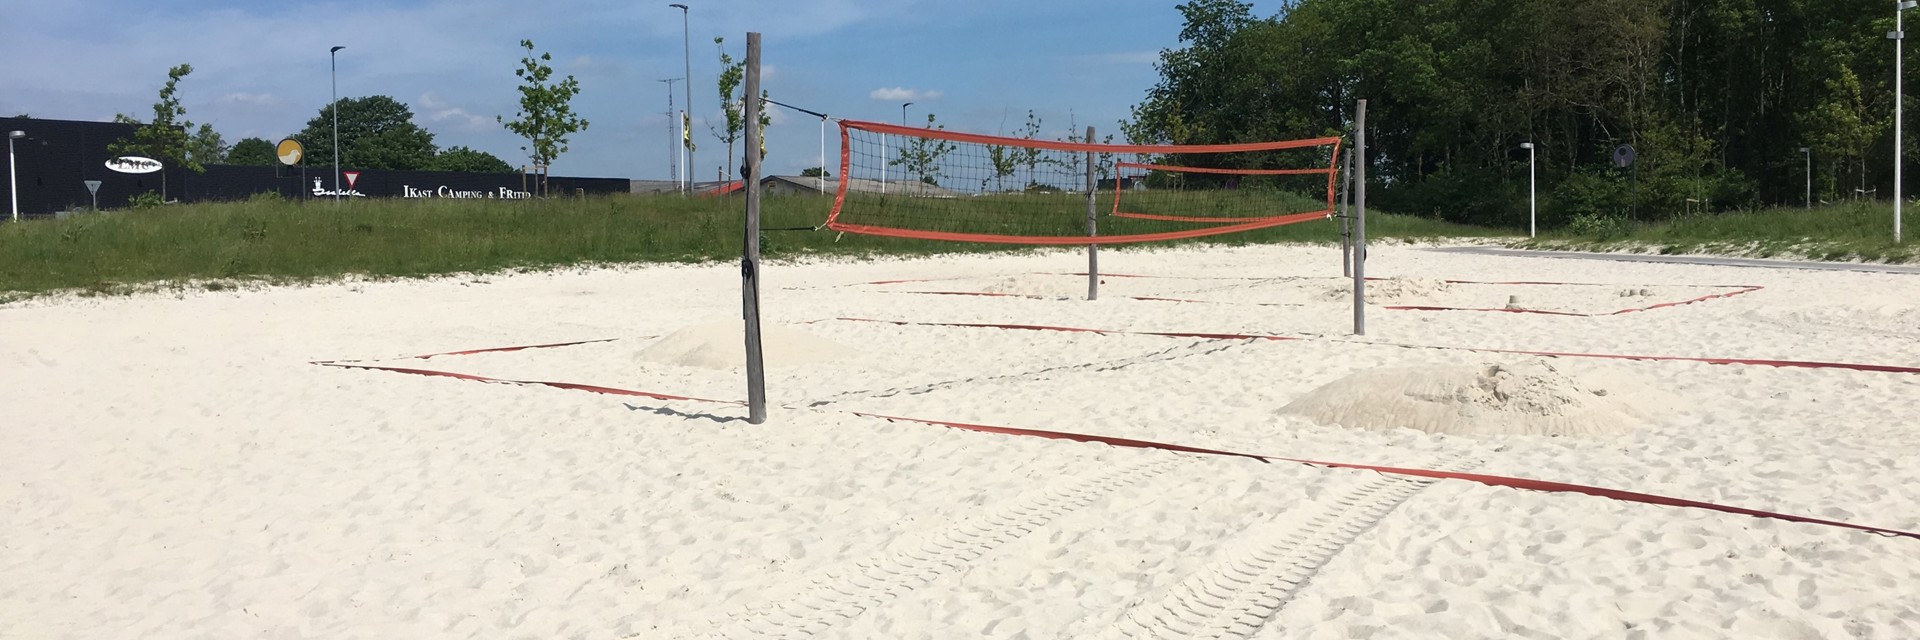 Beachvolley net sat op i et stort sandareal ved siden af Hjertet